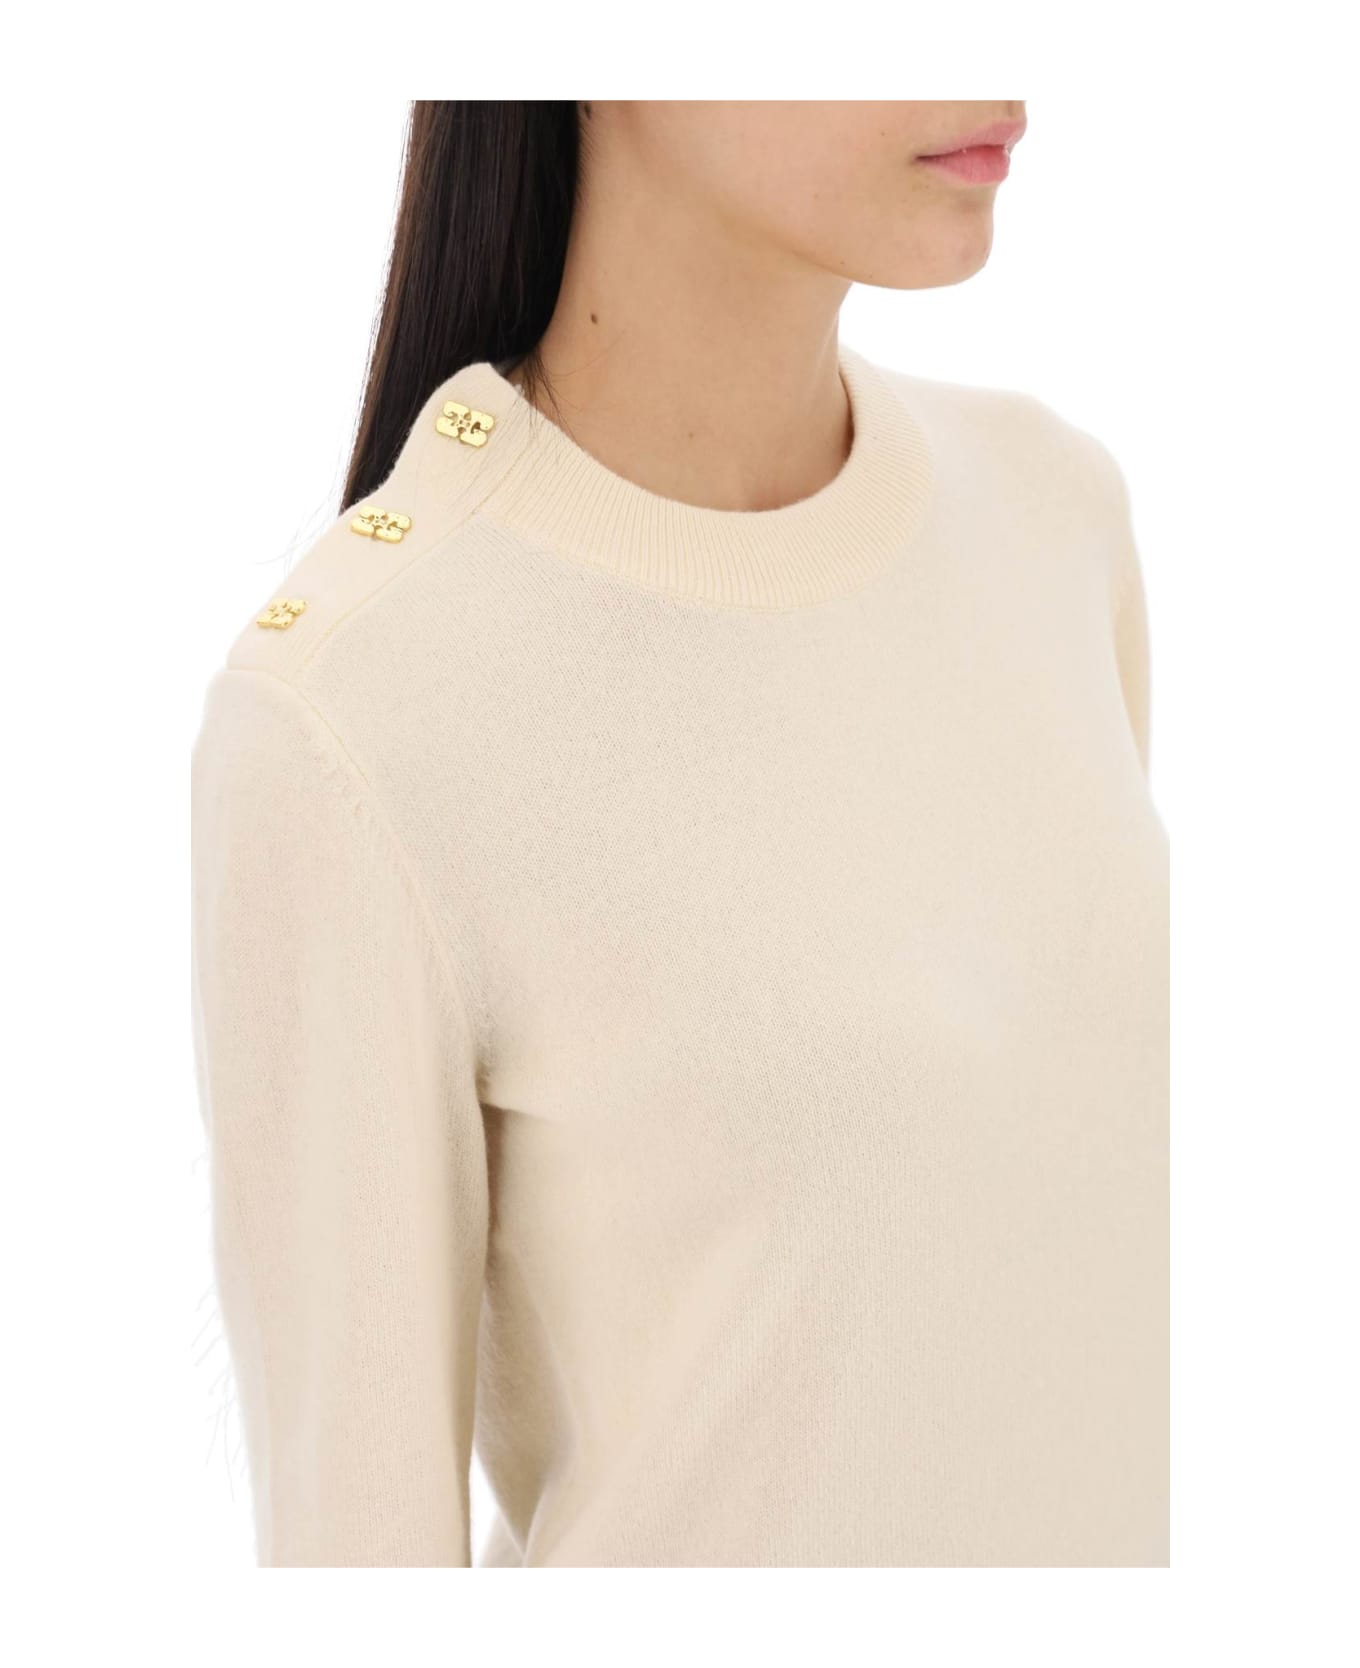 Ganni Sweater With Ganni Butterfly Buttons - ALABASTER GLEAM (Beige)